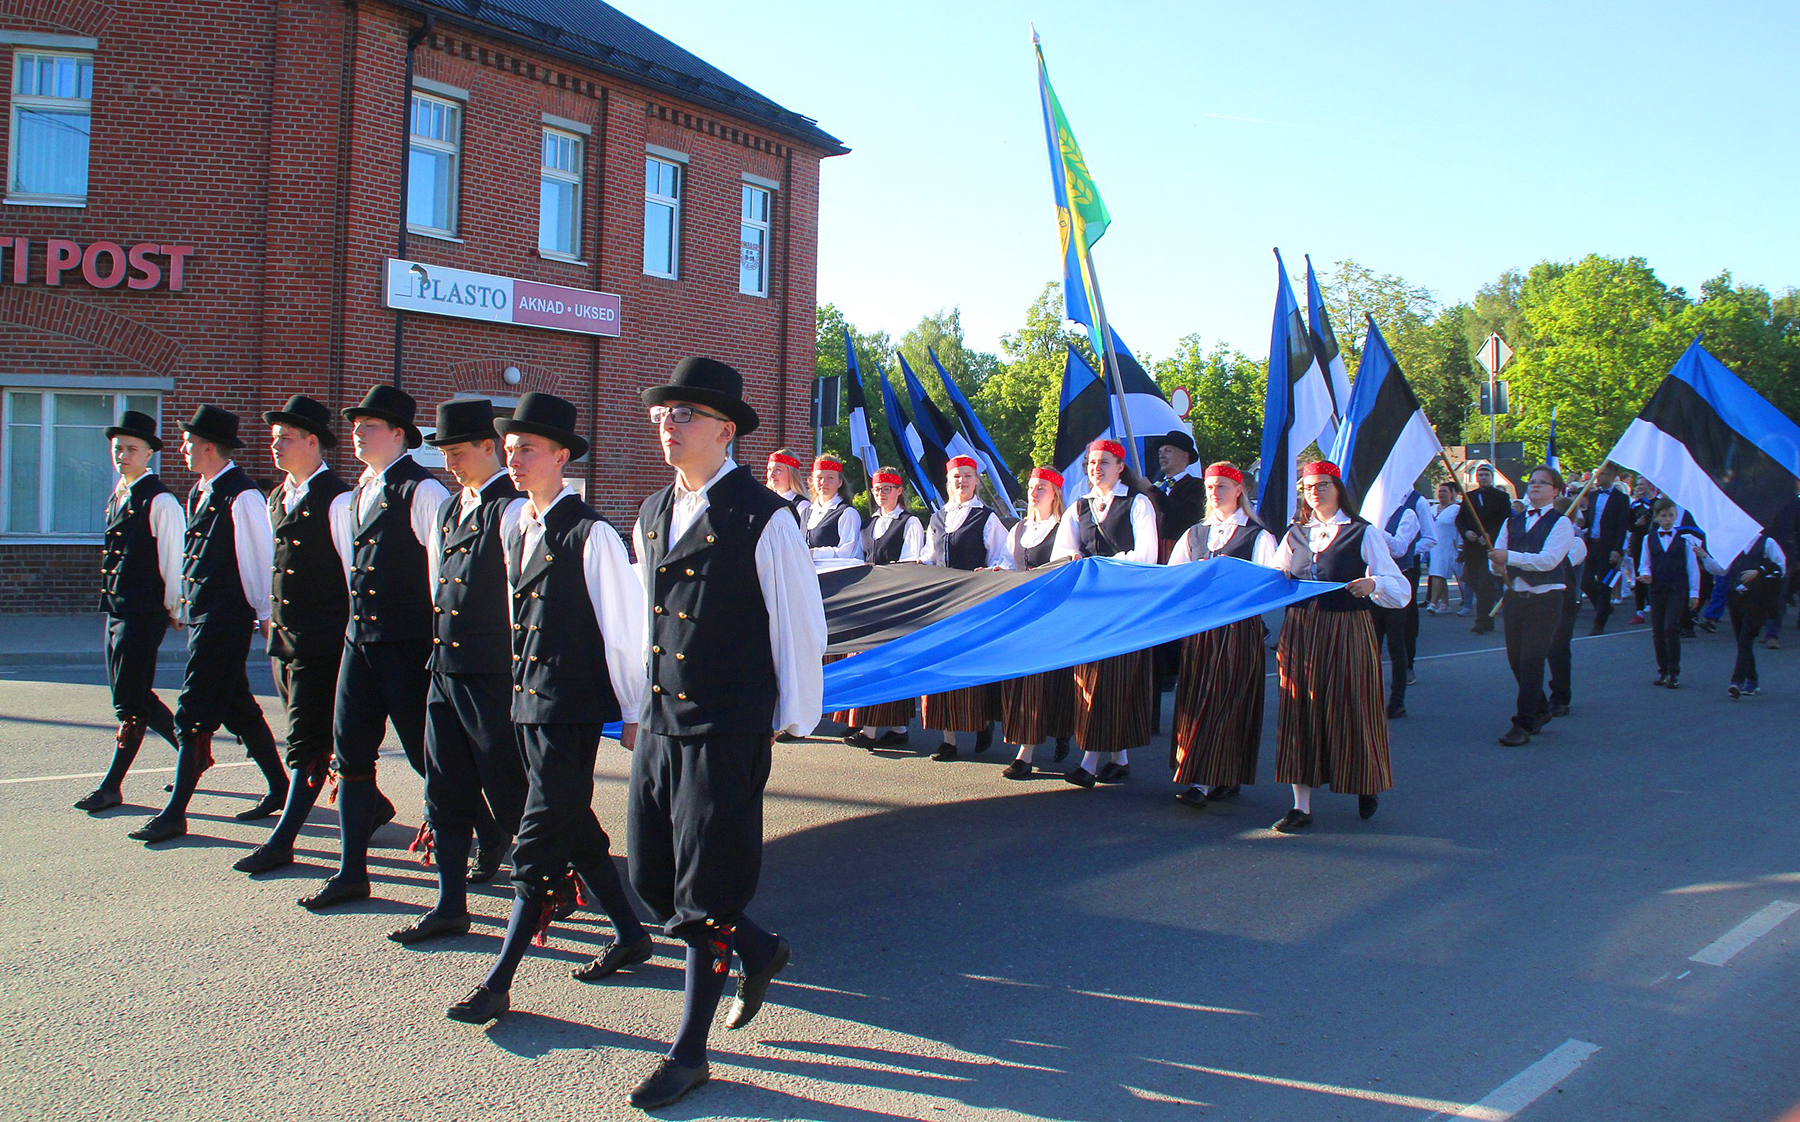 Eesti lipu 135. sünnipäeva tähistamine Põltsamaal. Foto Väino Valdmann